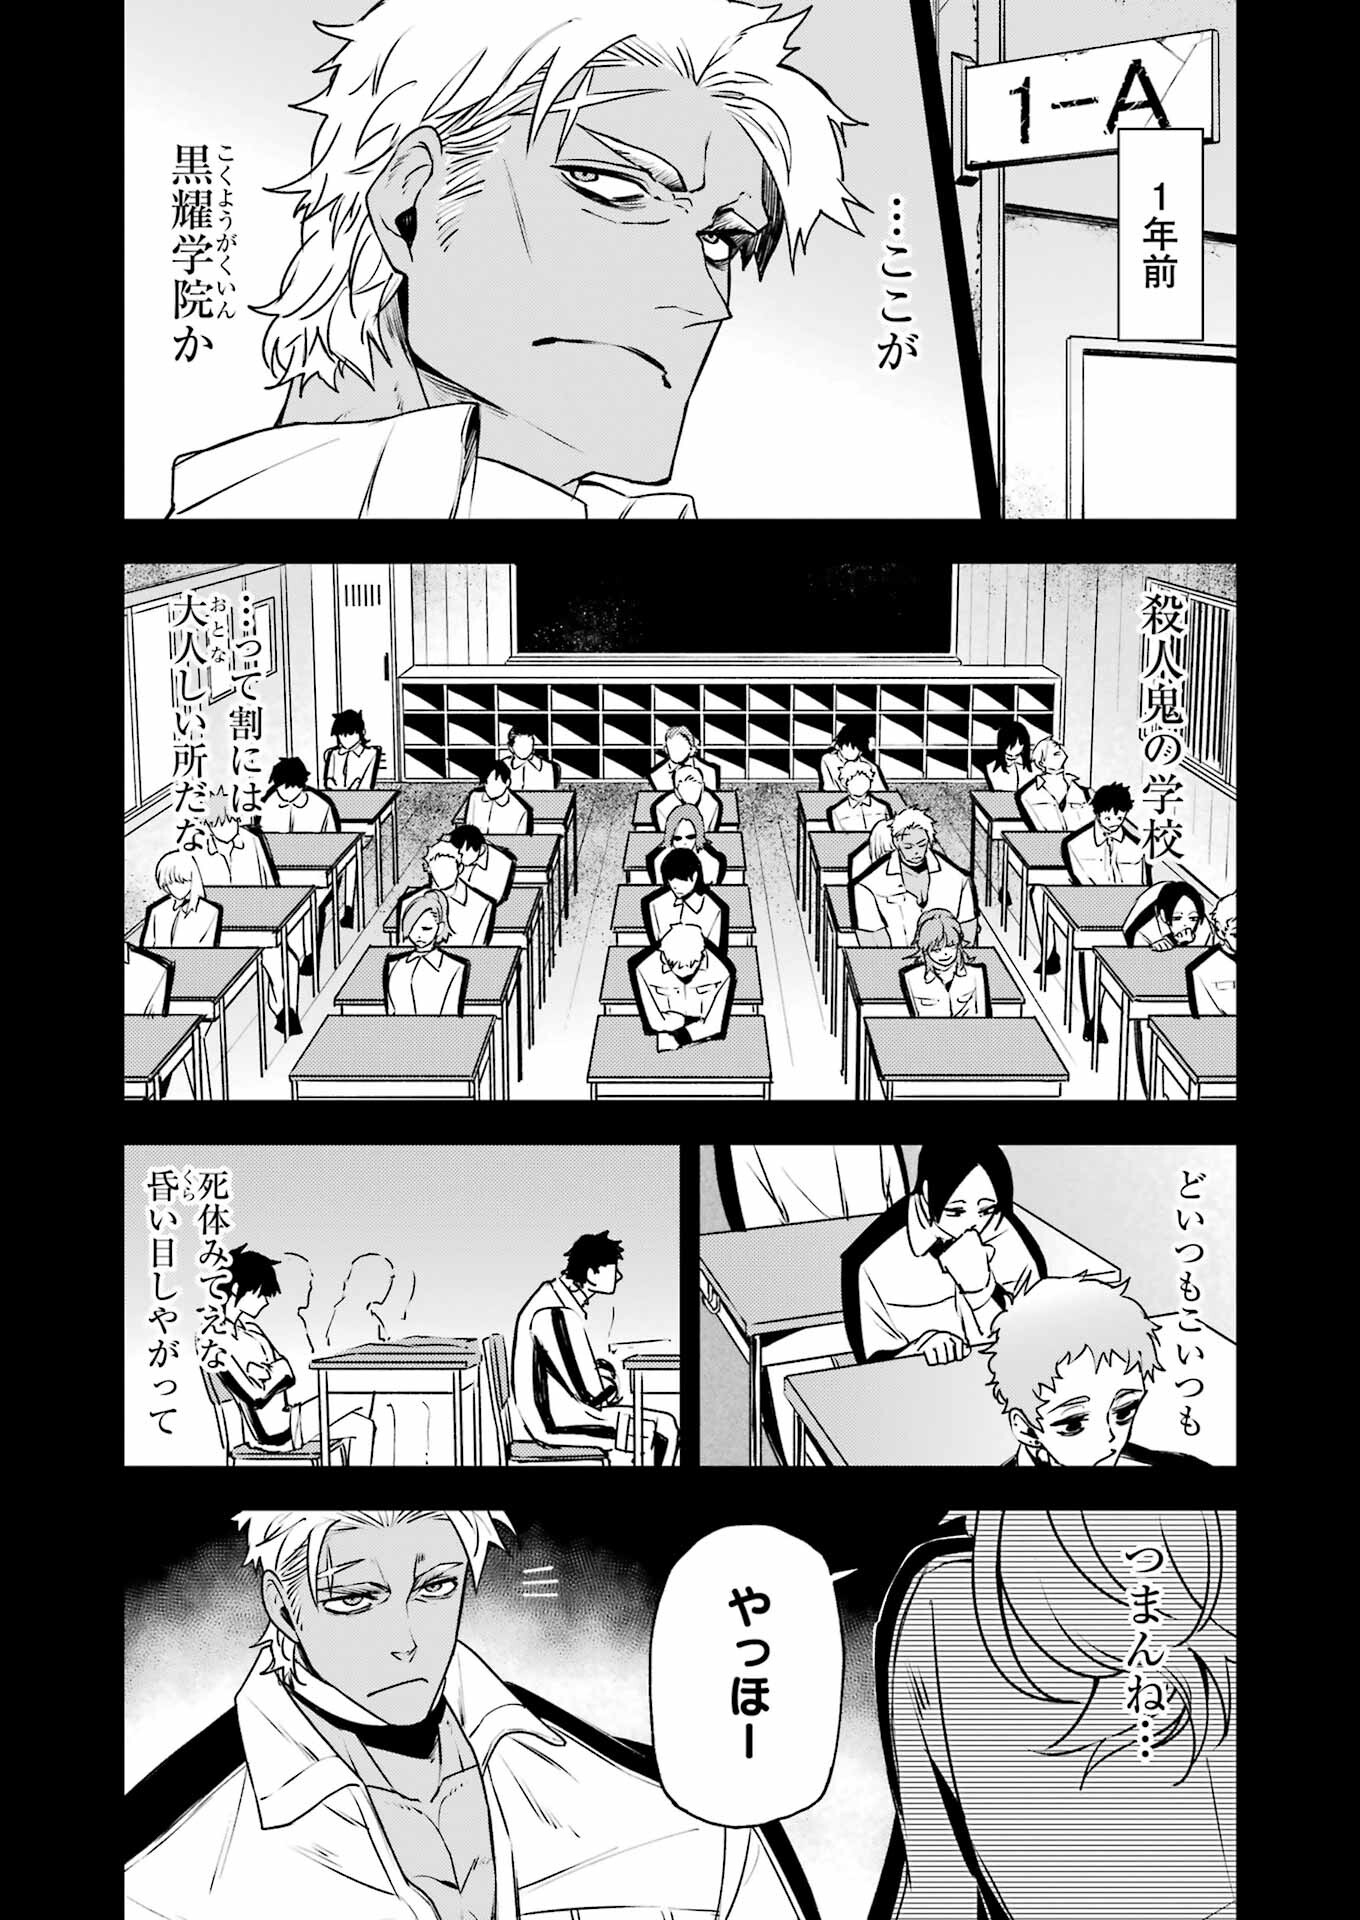 マーダーロック-殺人鬼の凶室-; Mādārokku – satsujinki no kyō-shitsu -; Murder Rock-The Murderer’s Chamber- 第31話 - Page 5